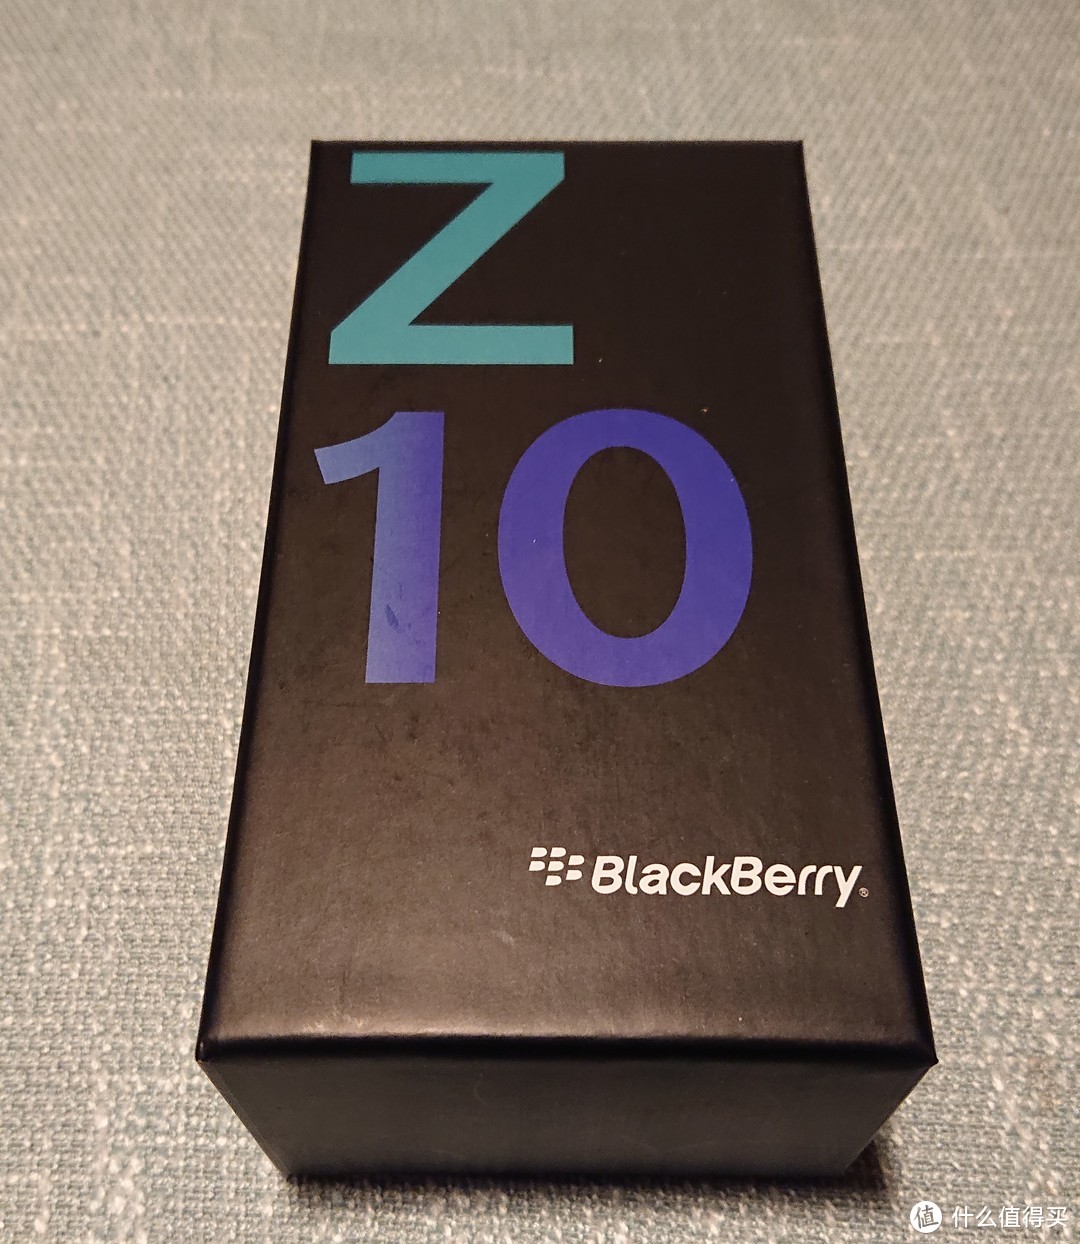 来自2019的 黑莓Z10 / BlackBerry Z10 开箱